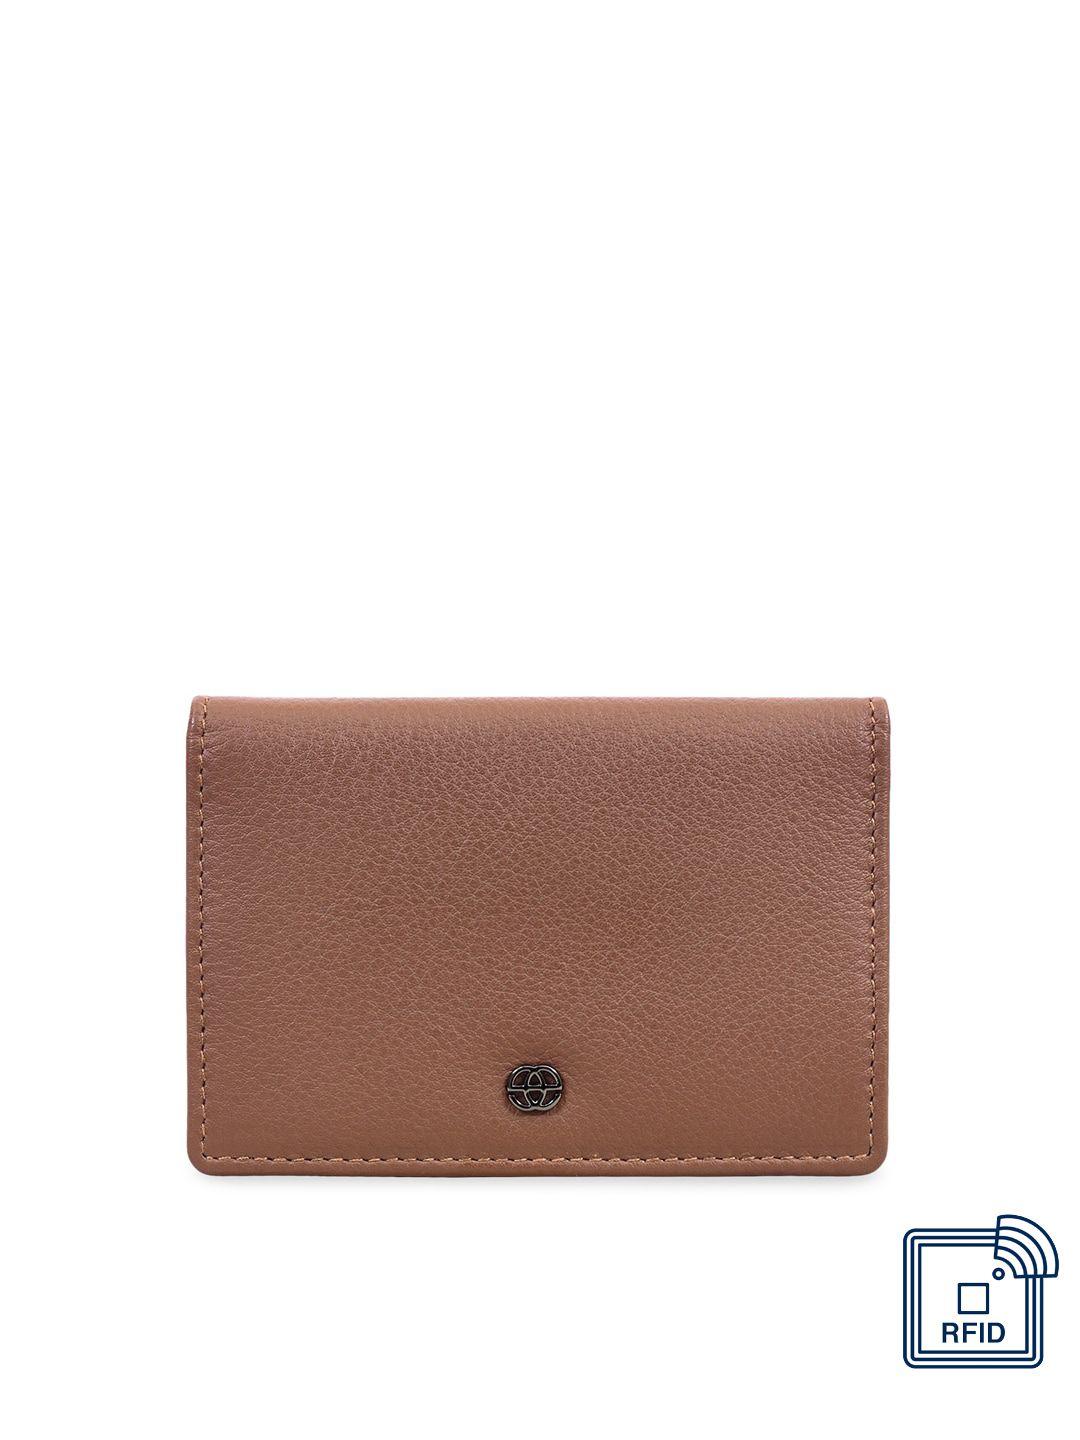 eske unisex tan brown solid leather card holder